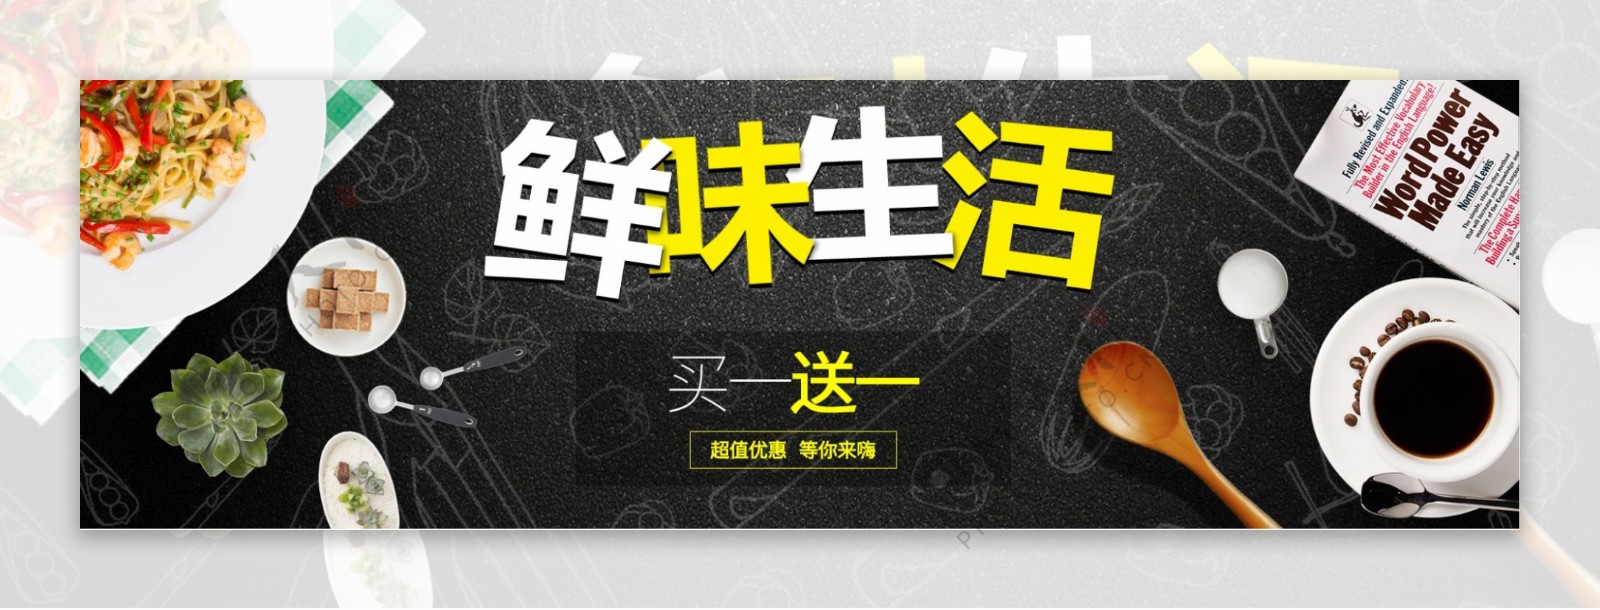 食品美食海报设计淘宝电商banner